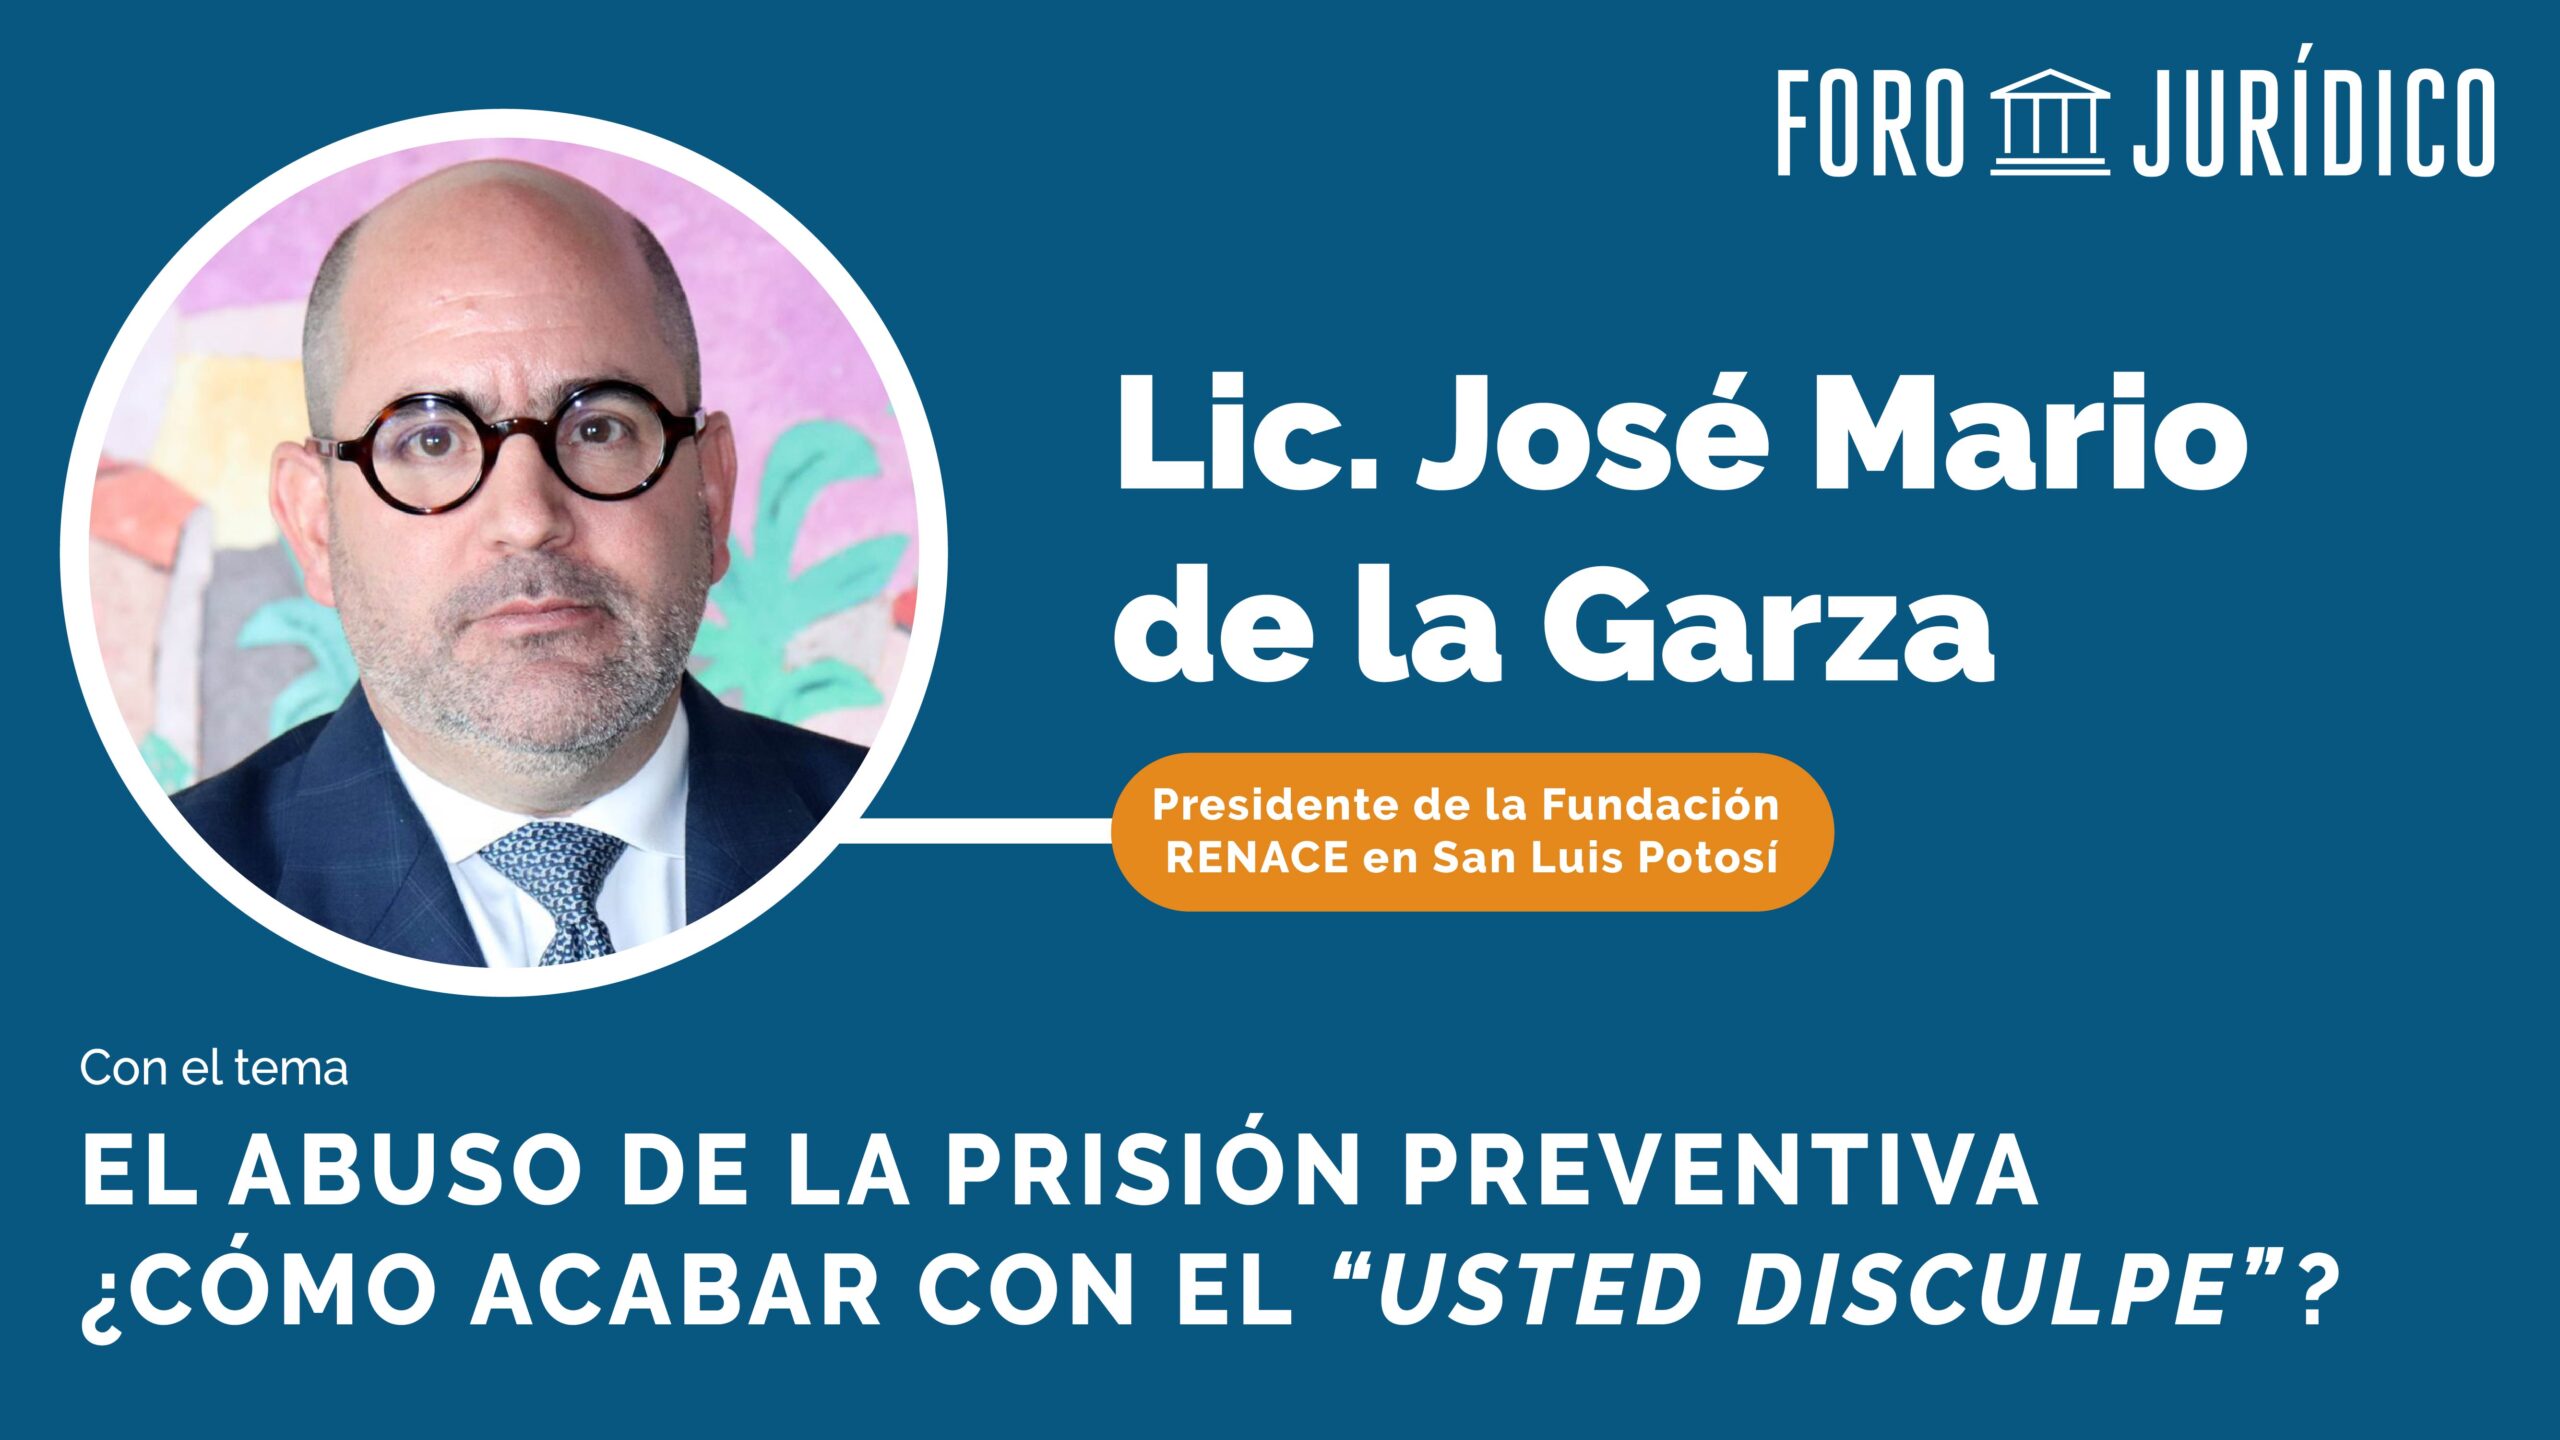 foro jurídico El abuso de la Prisión Preventiva José Mario de la Garza